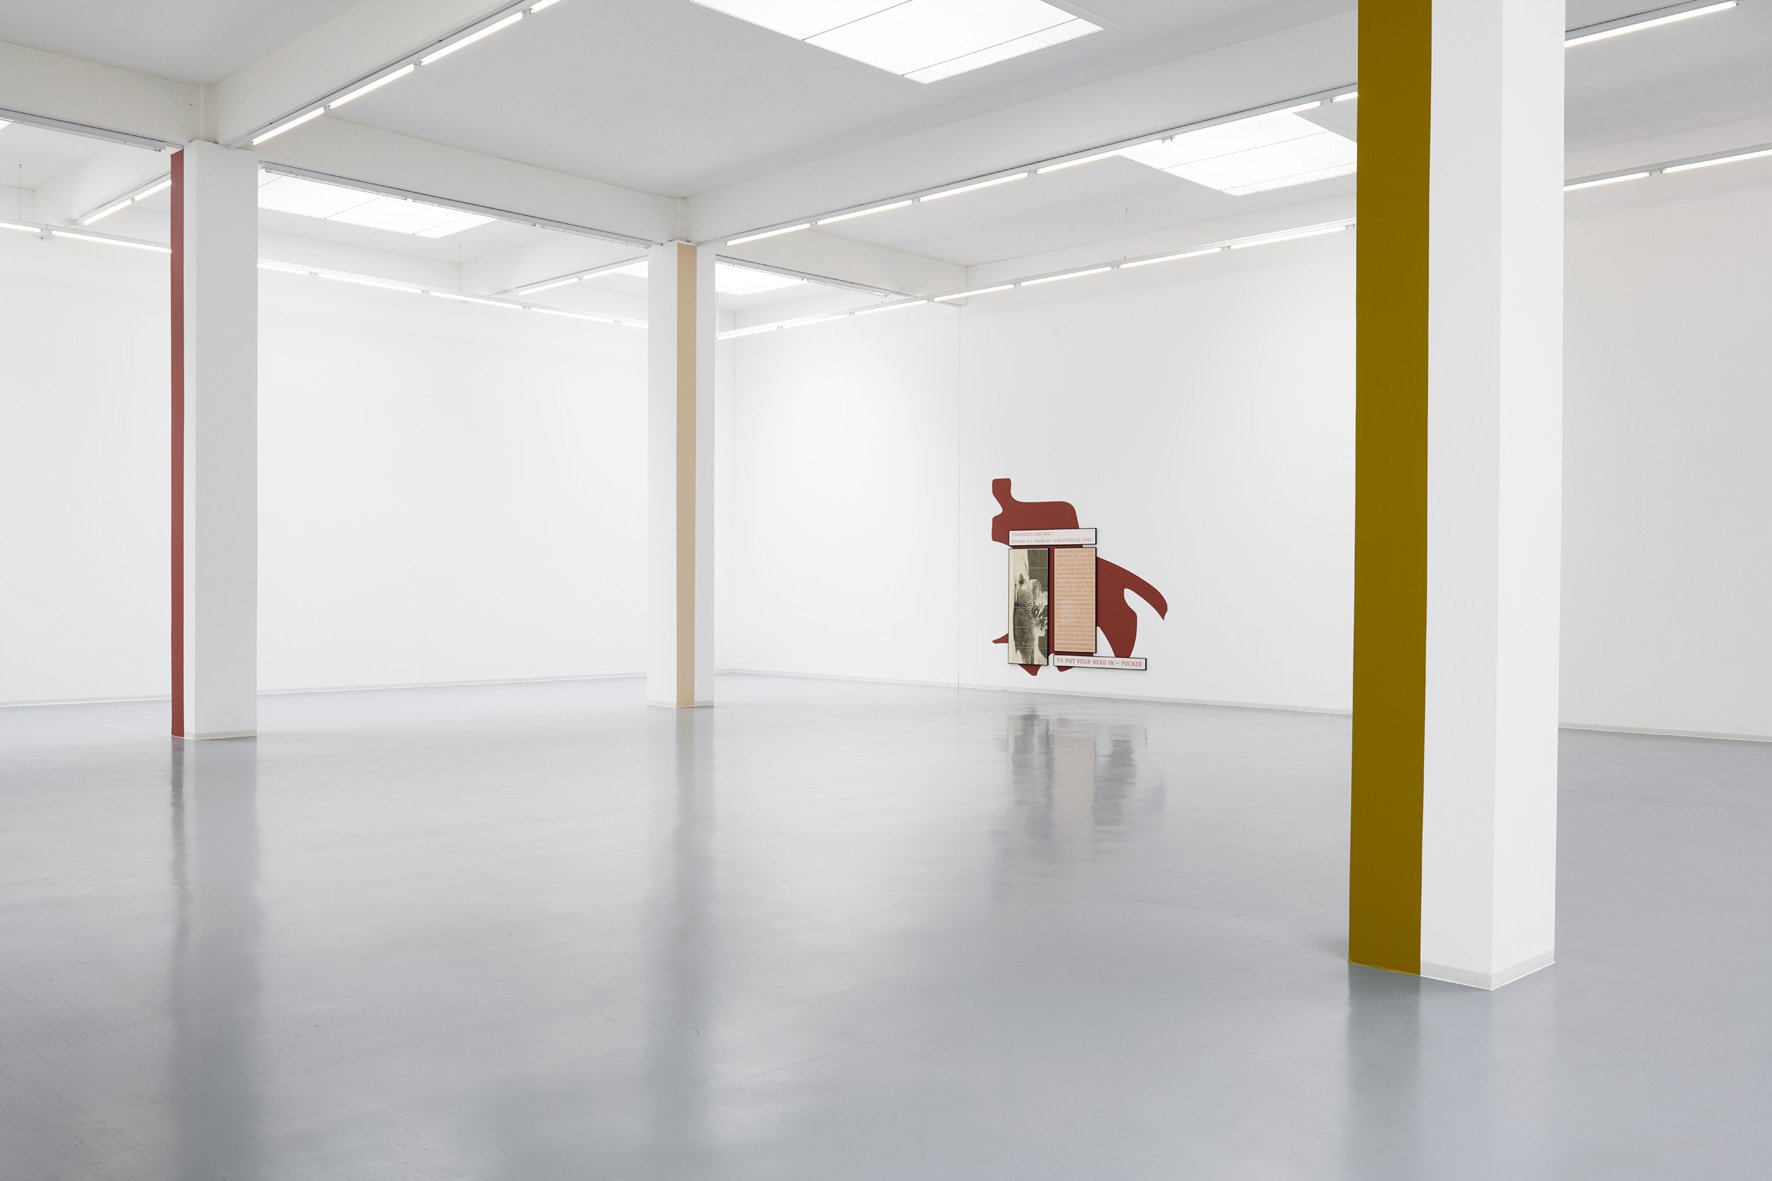 Sarah Kürten, installation view, 2018, Bonner Kunstverein, courtesy the artist and Galerie Max Mayer, Düsseldorf. Photo: Mareike Tocha